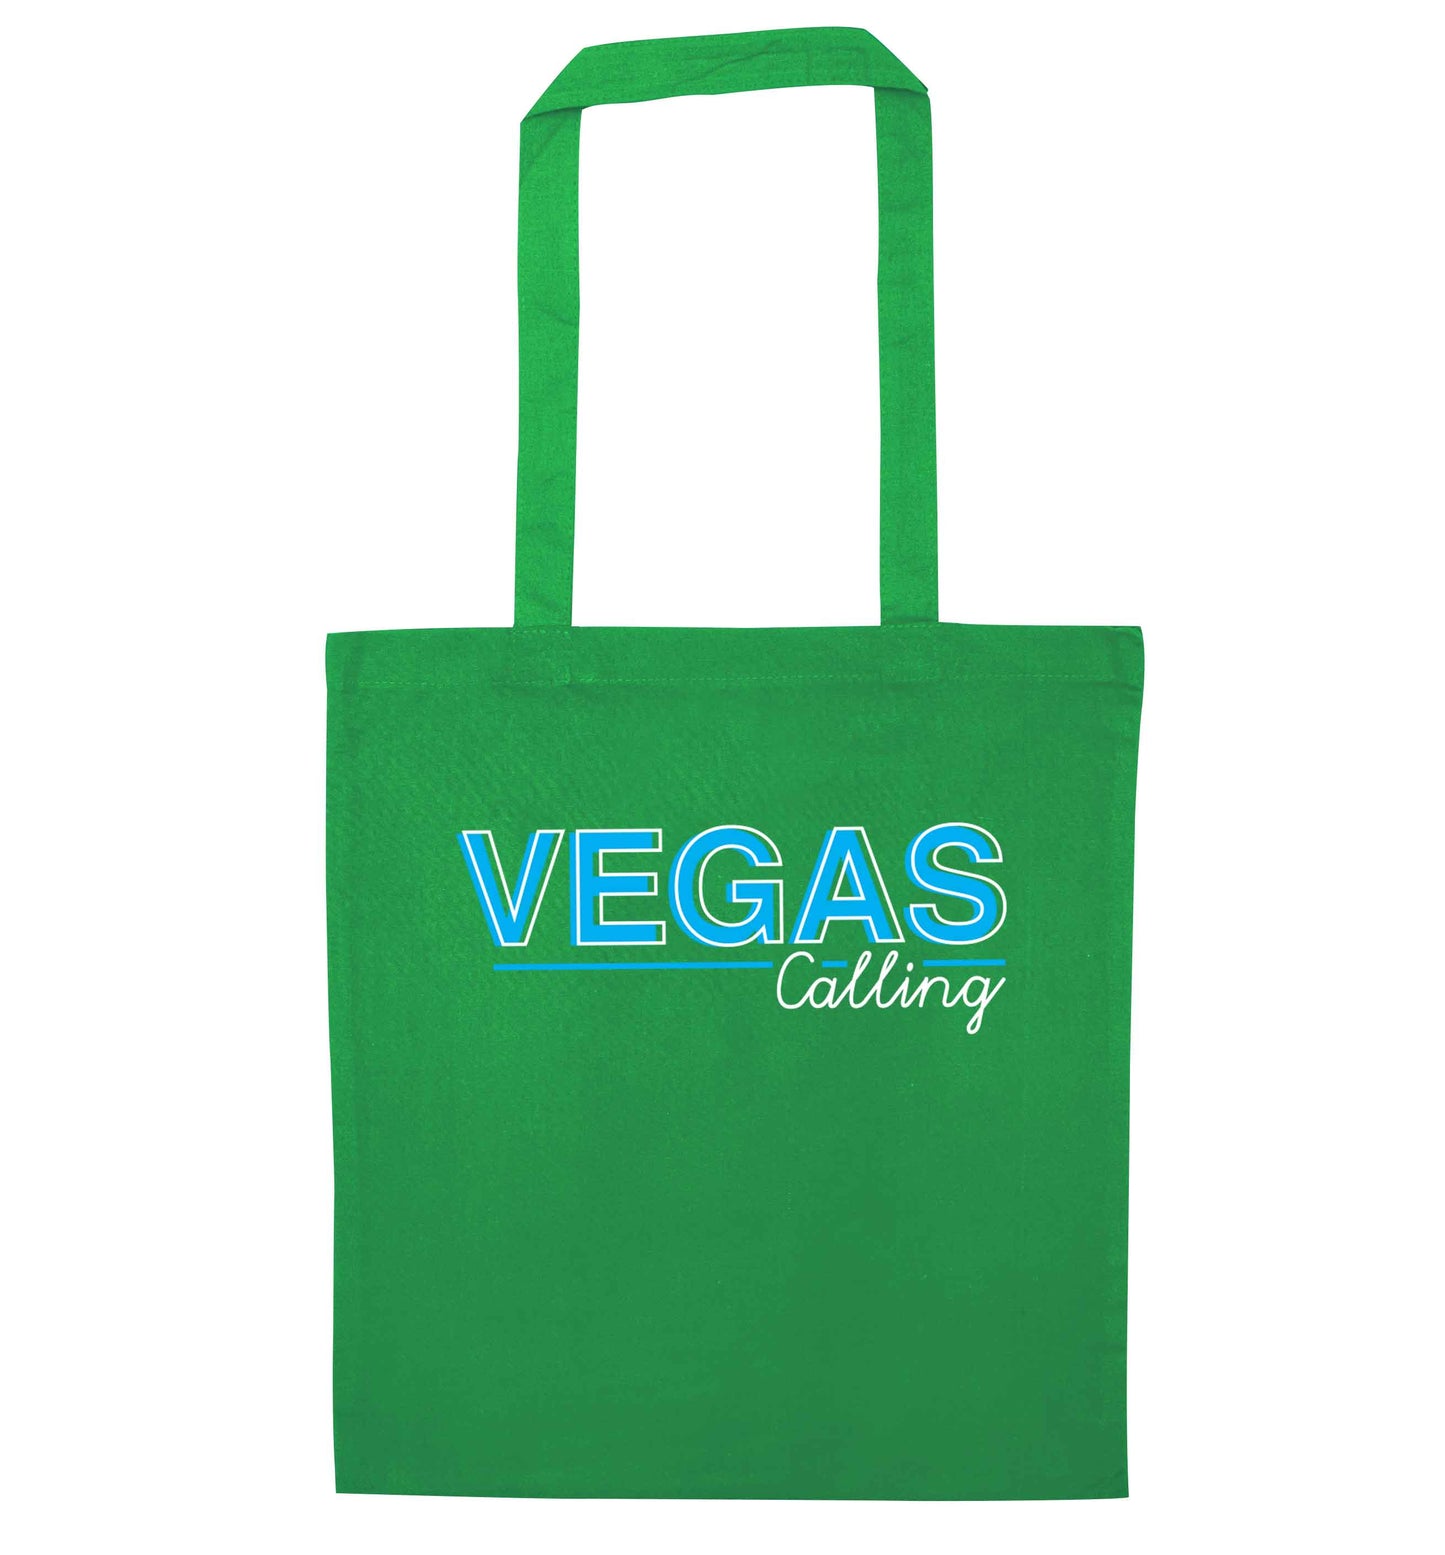 Vegas calling green tote bag